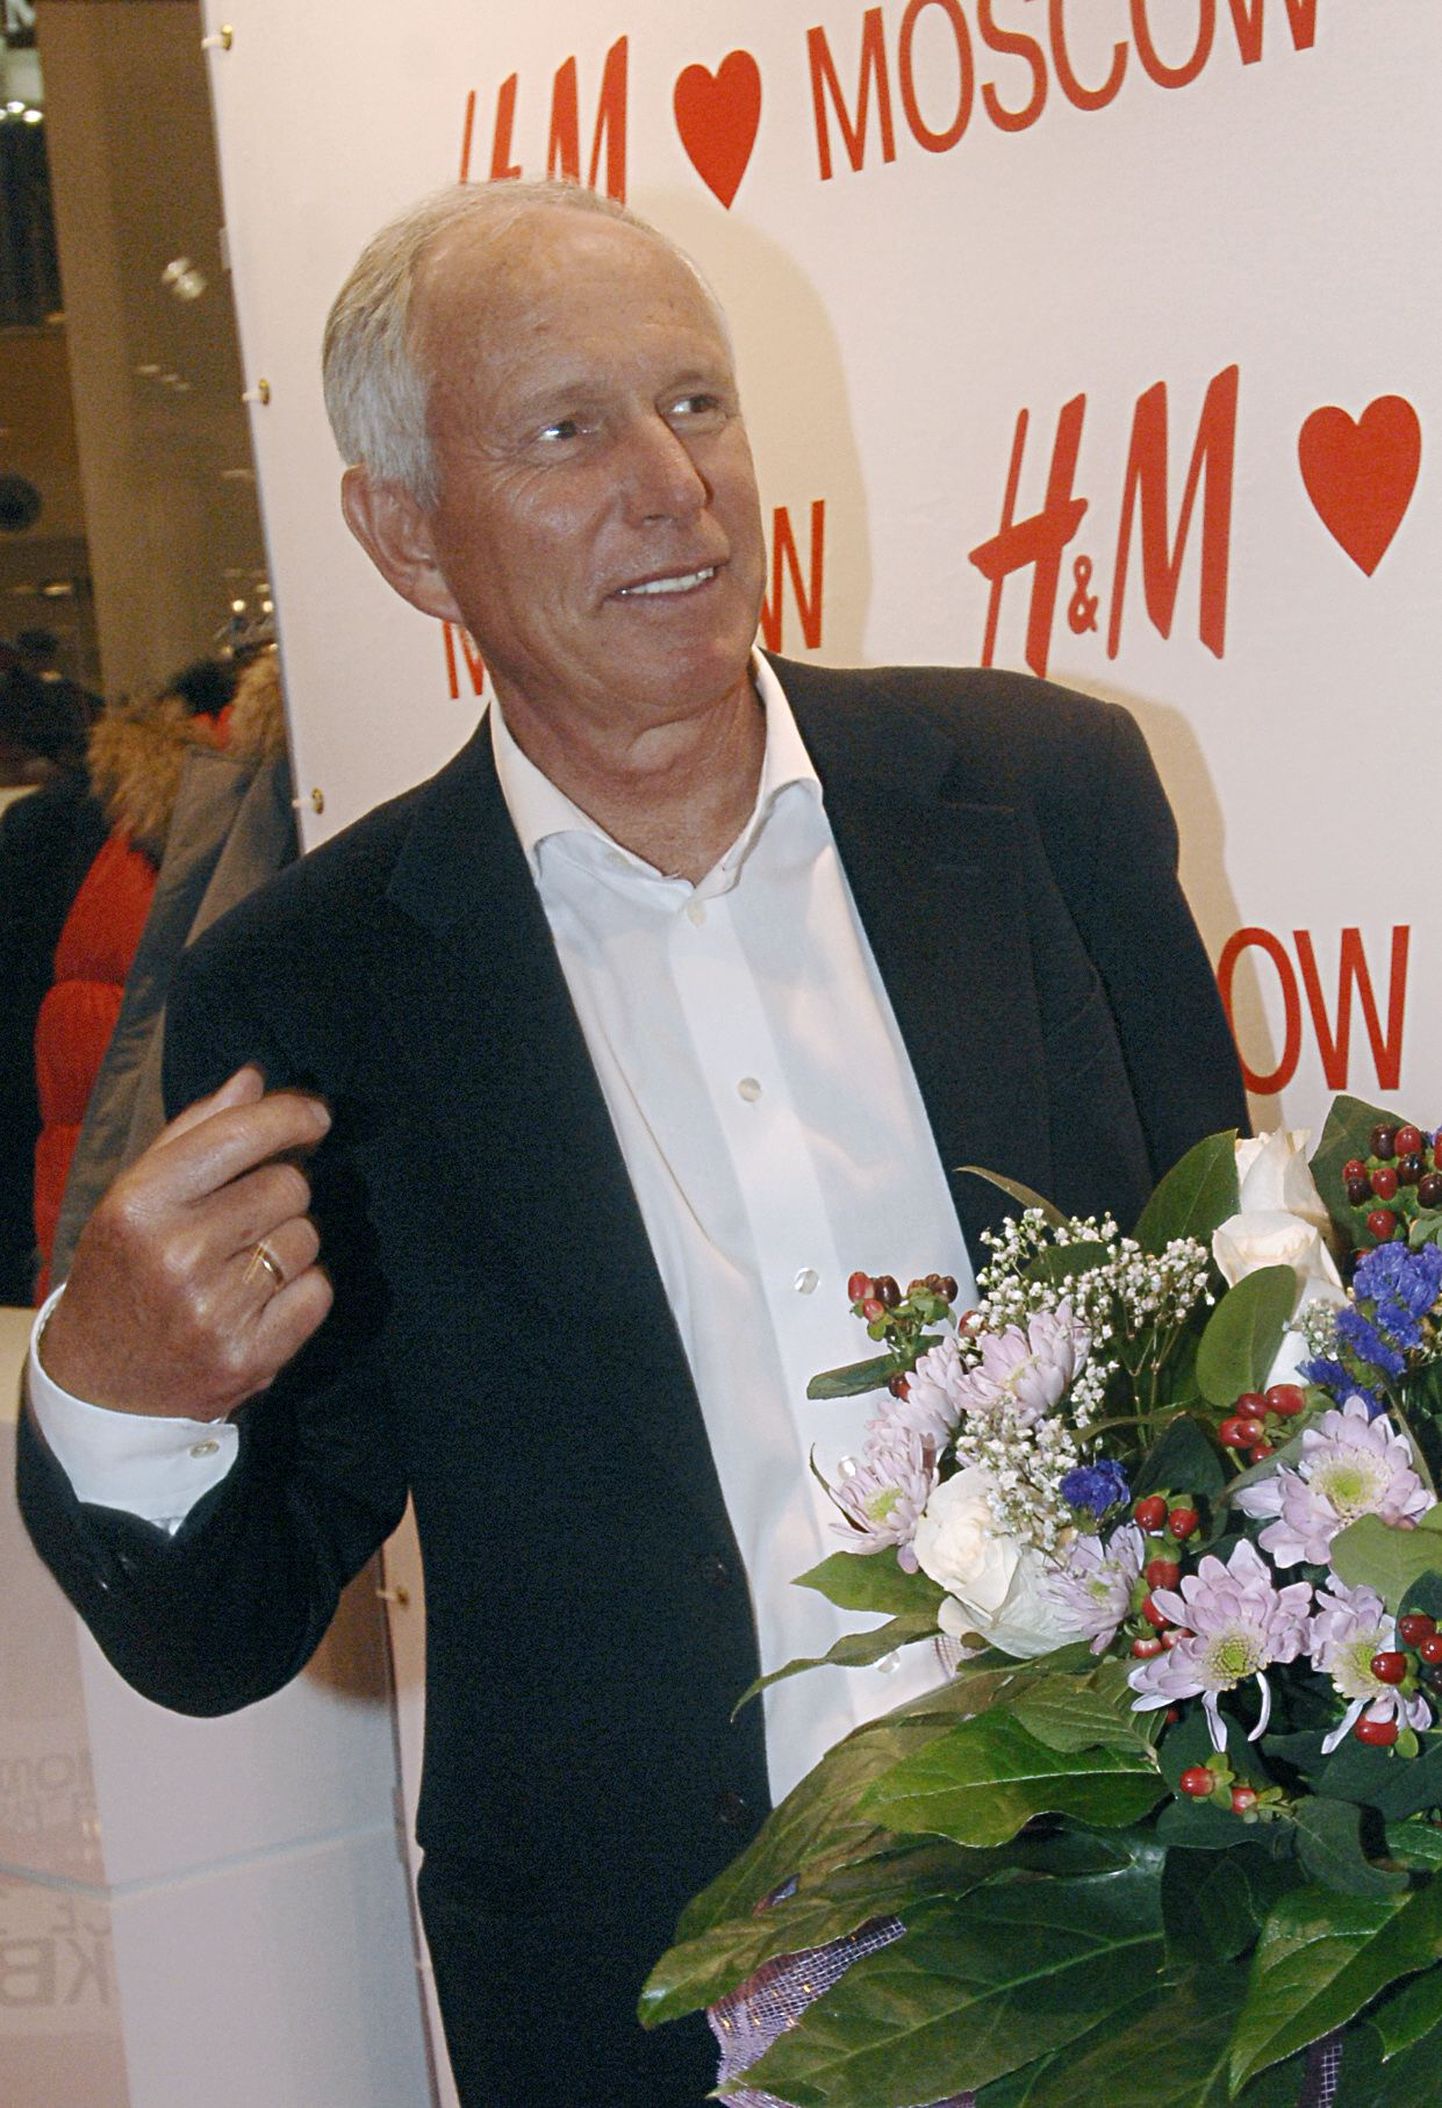 H&M (Hennes & Mauritz) tegevjuht Rolf Eriksen eelmisel aastal Moskva poe avamisel.